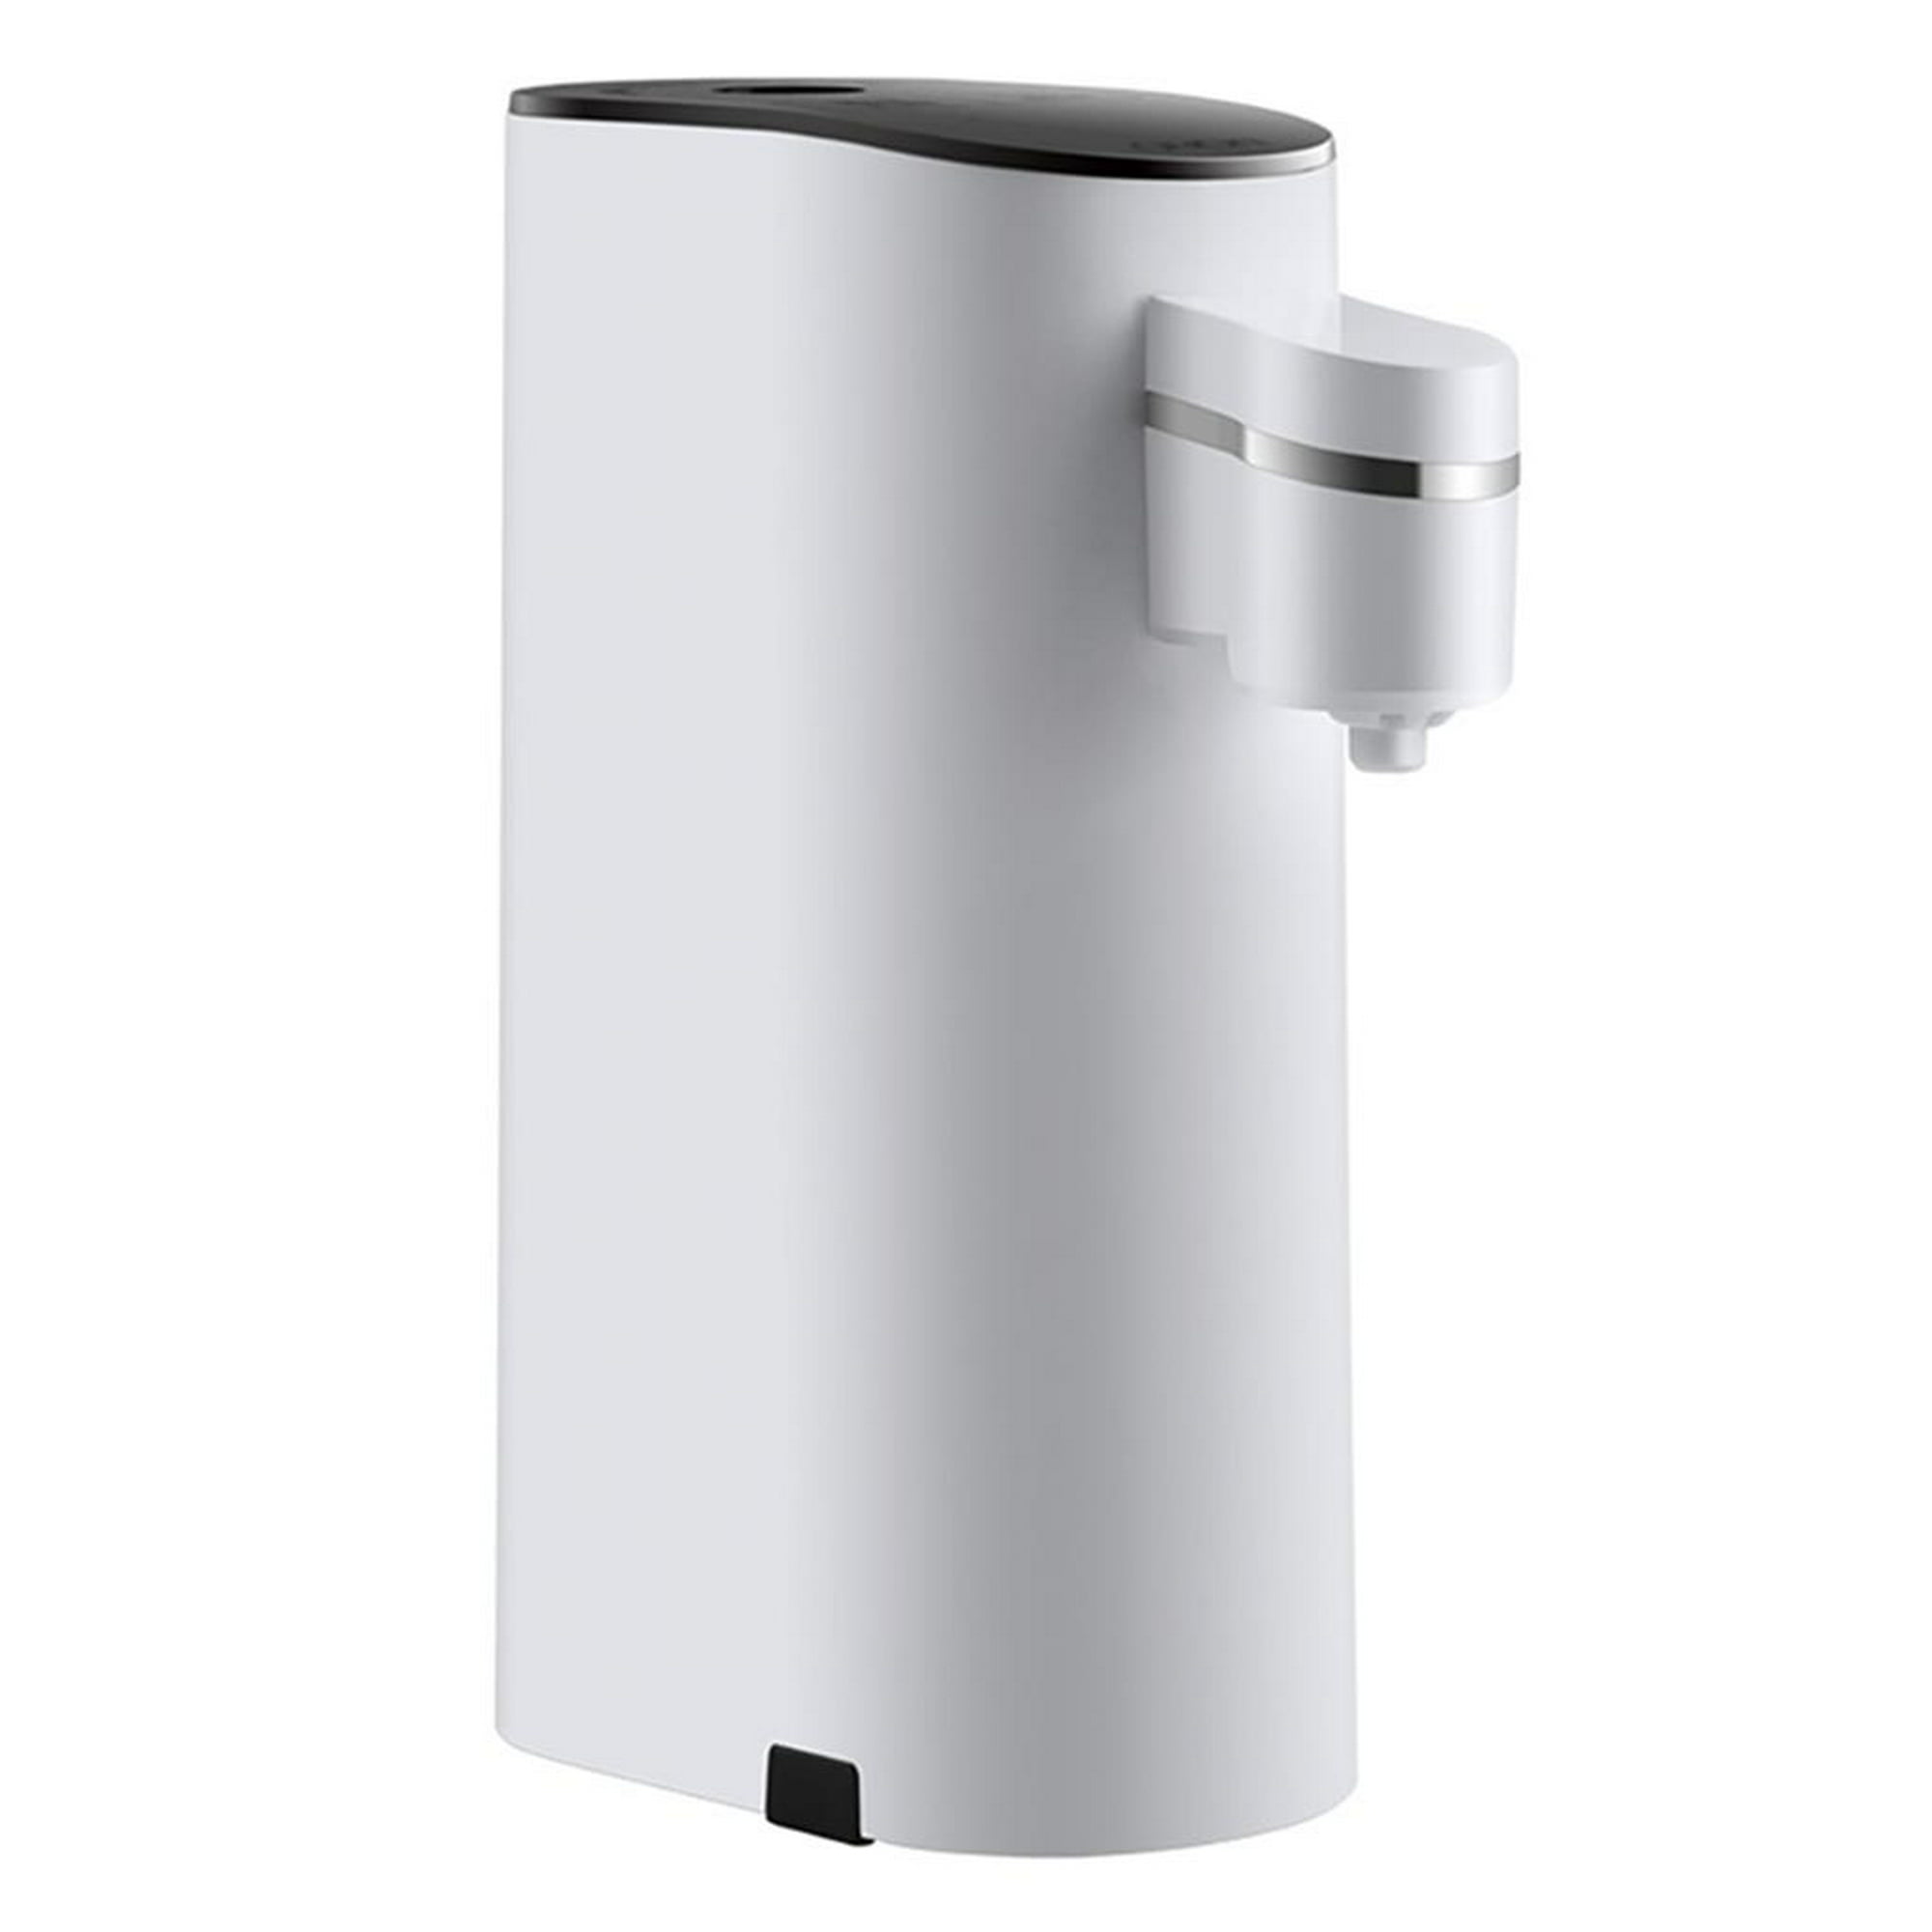 Dispensador de enfriador de agua de carga superior, dispensador eléctrico  de agua fría caliente de escritorio de 5 galones, bloqueo de seguridad para